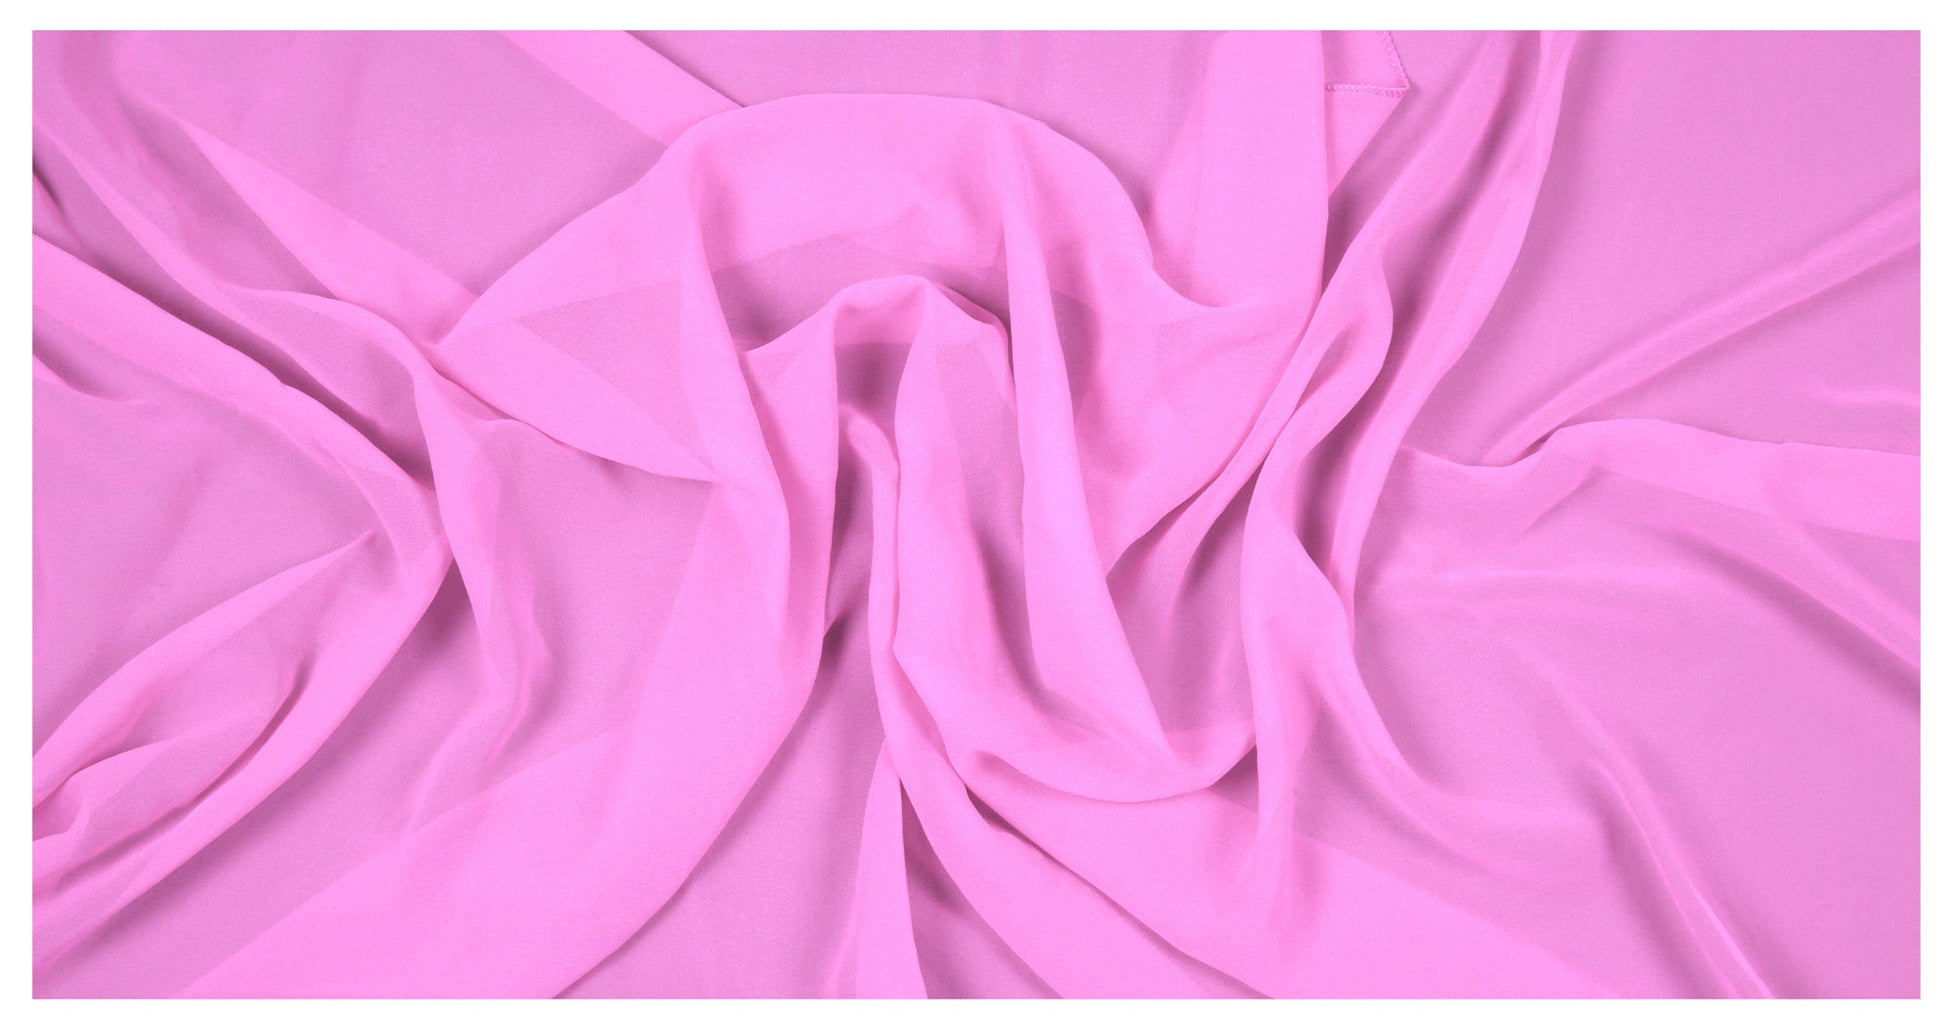 Bubblegum Pink,599eac89-2c33-4ff4-999c-656a4ed05f6c